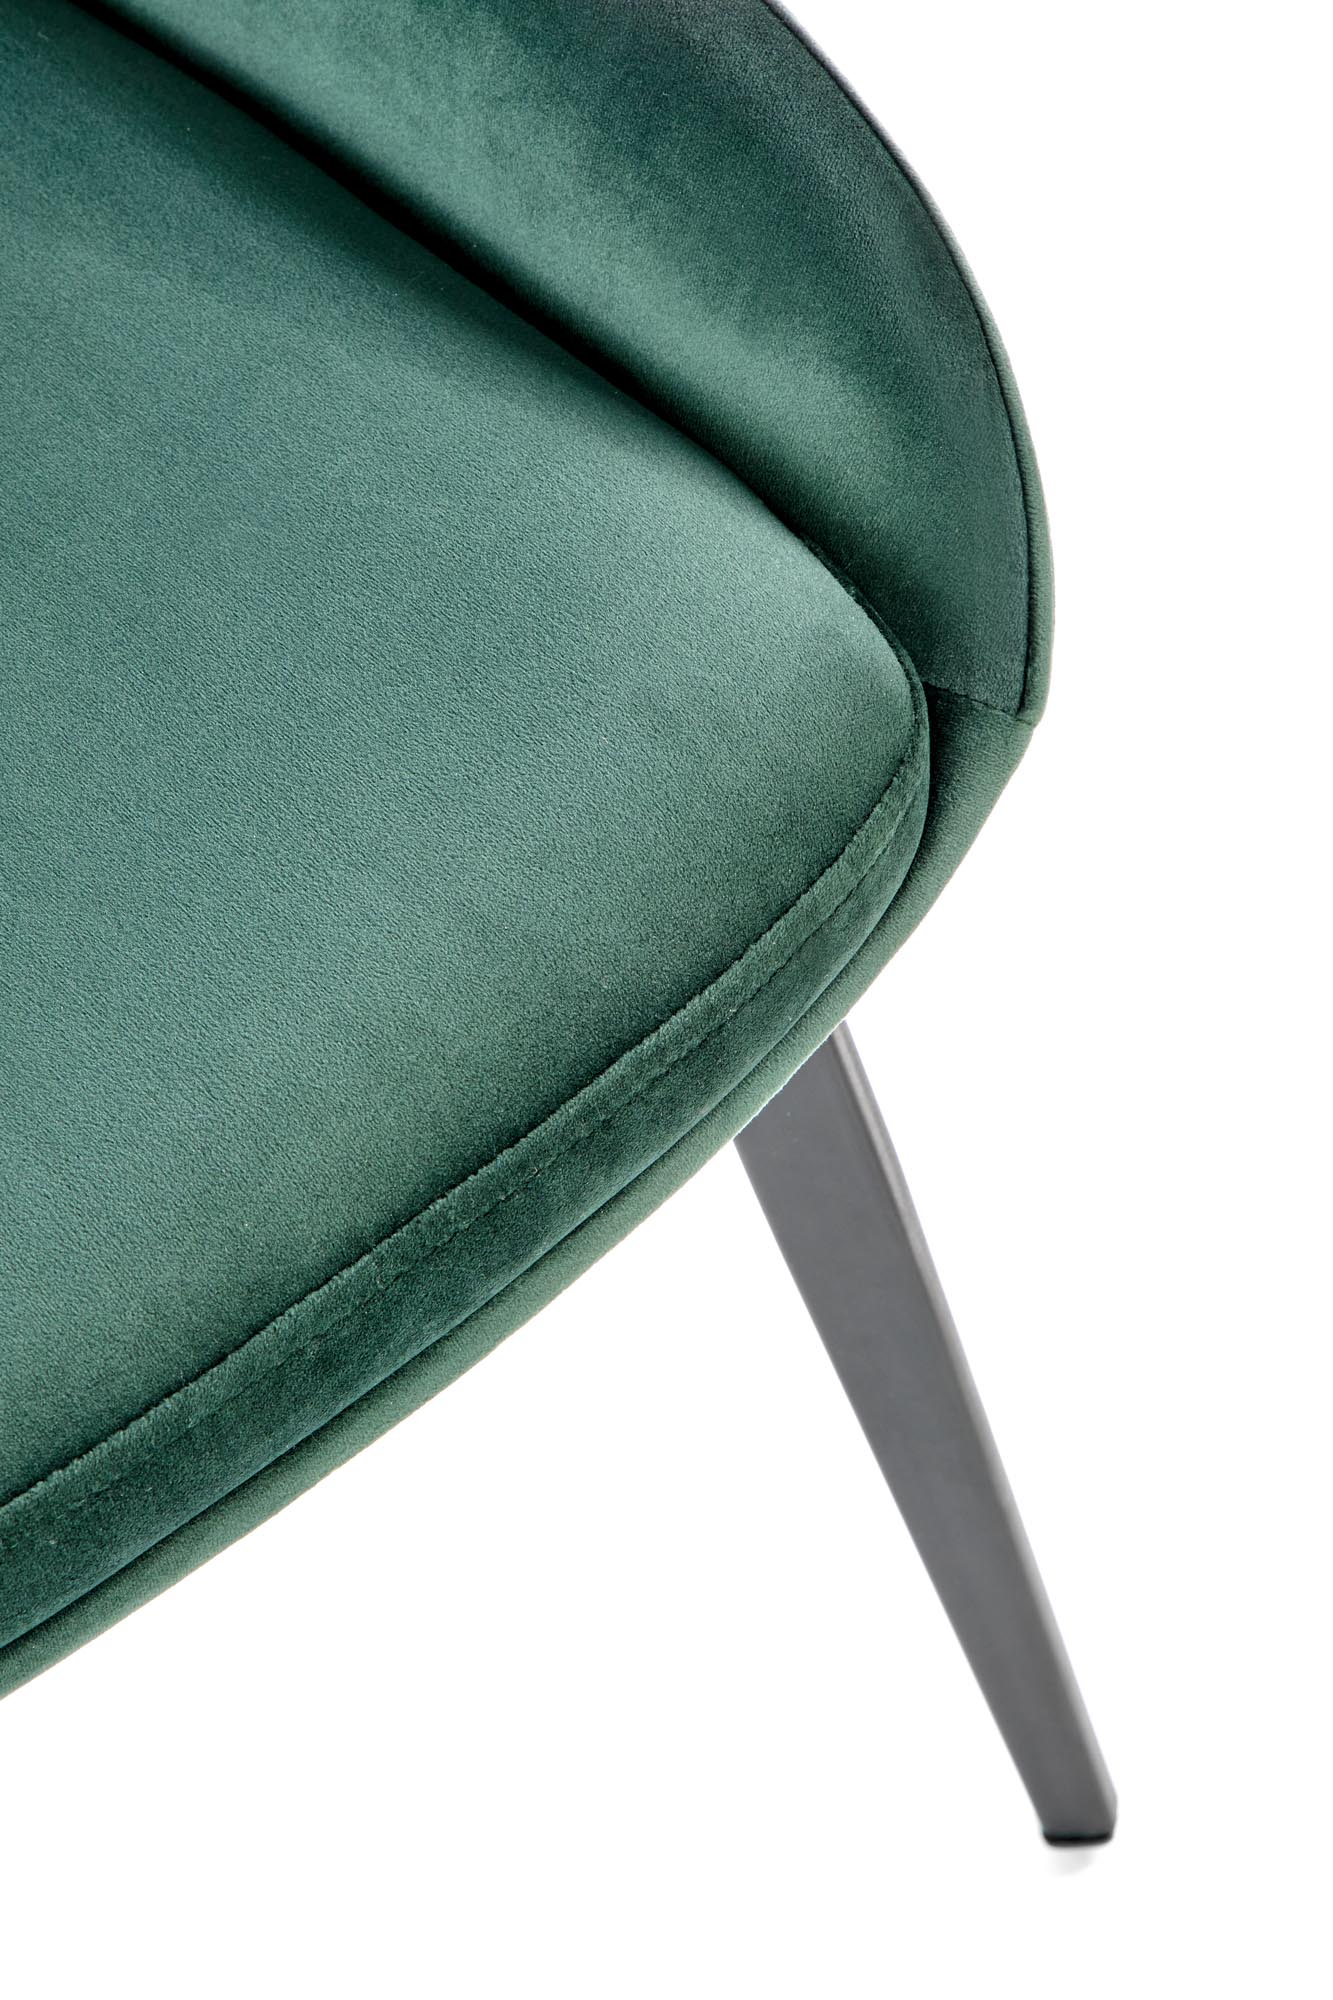 K479 jedálenská stolička tmavo zelená